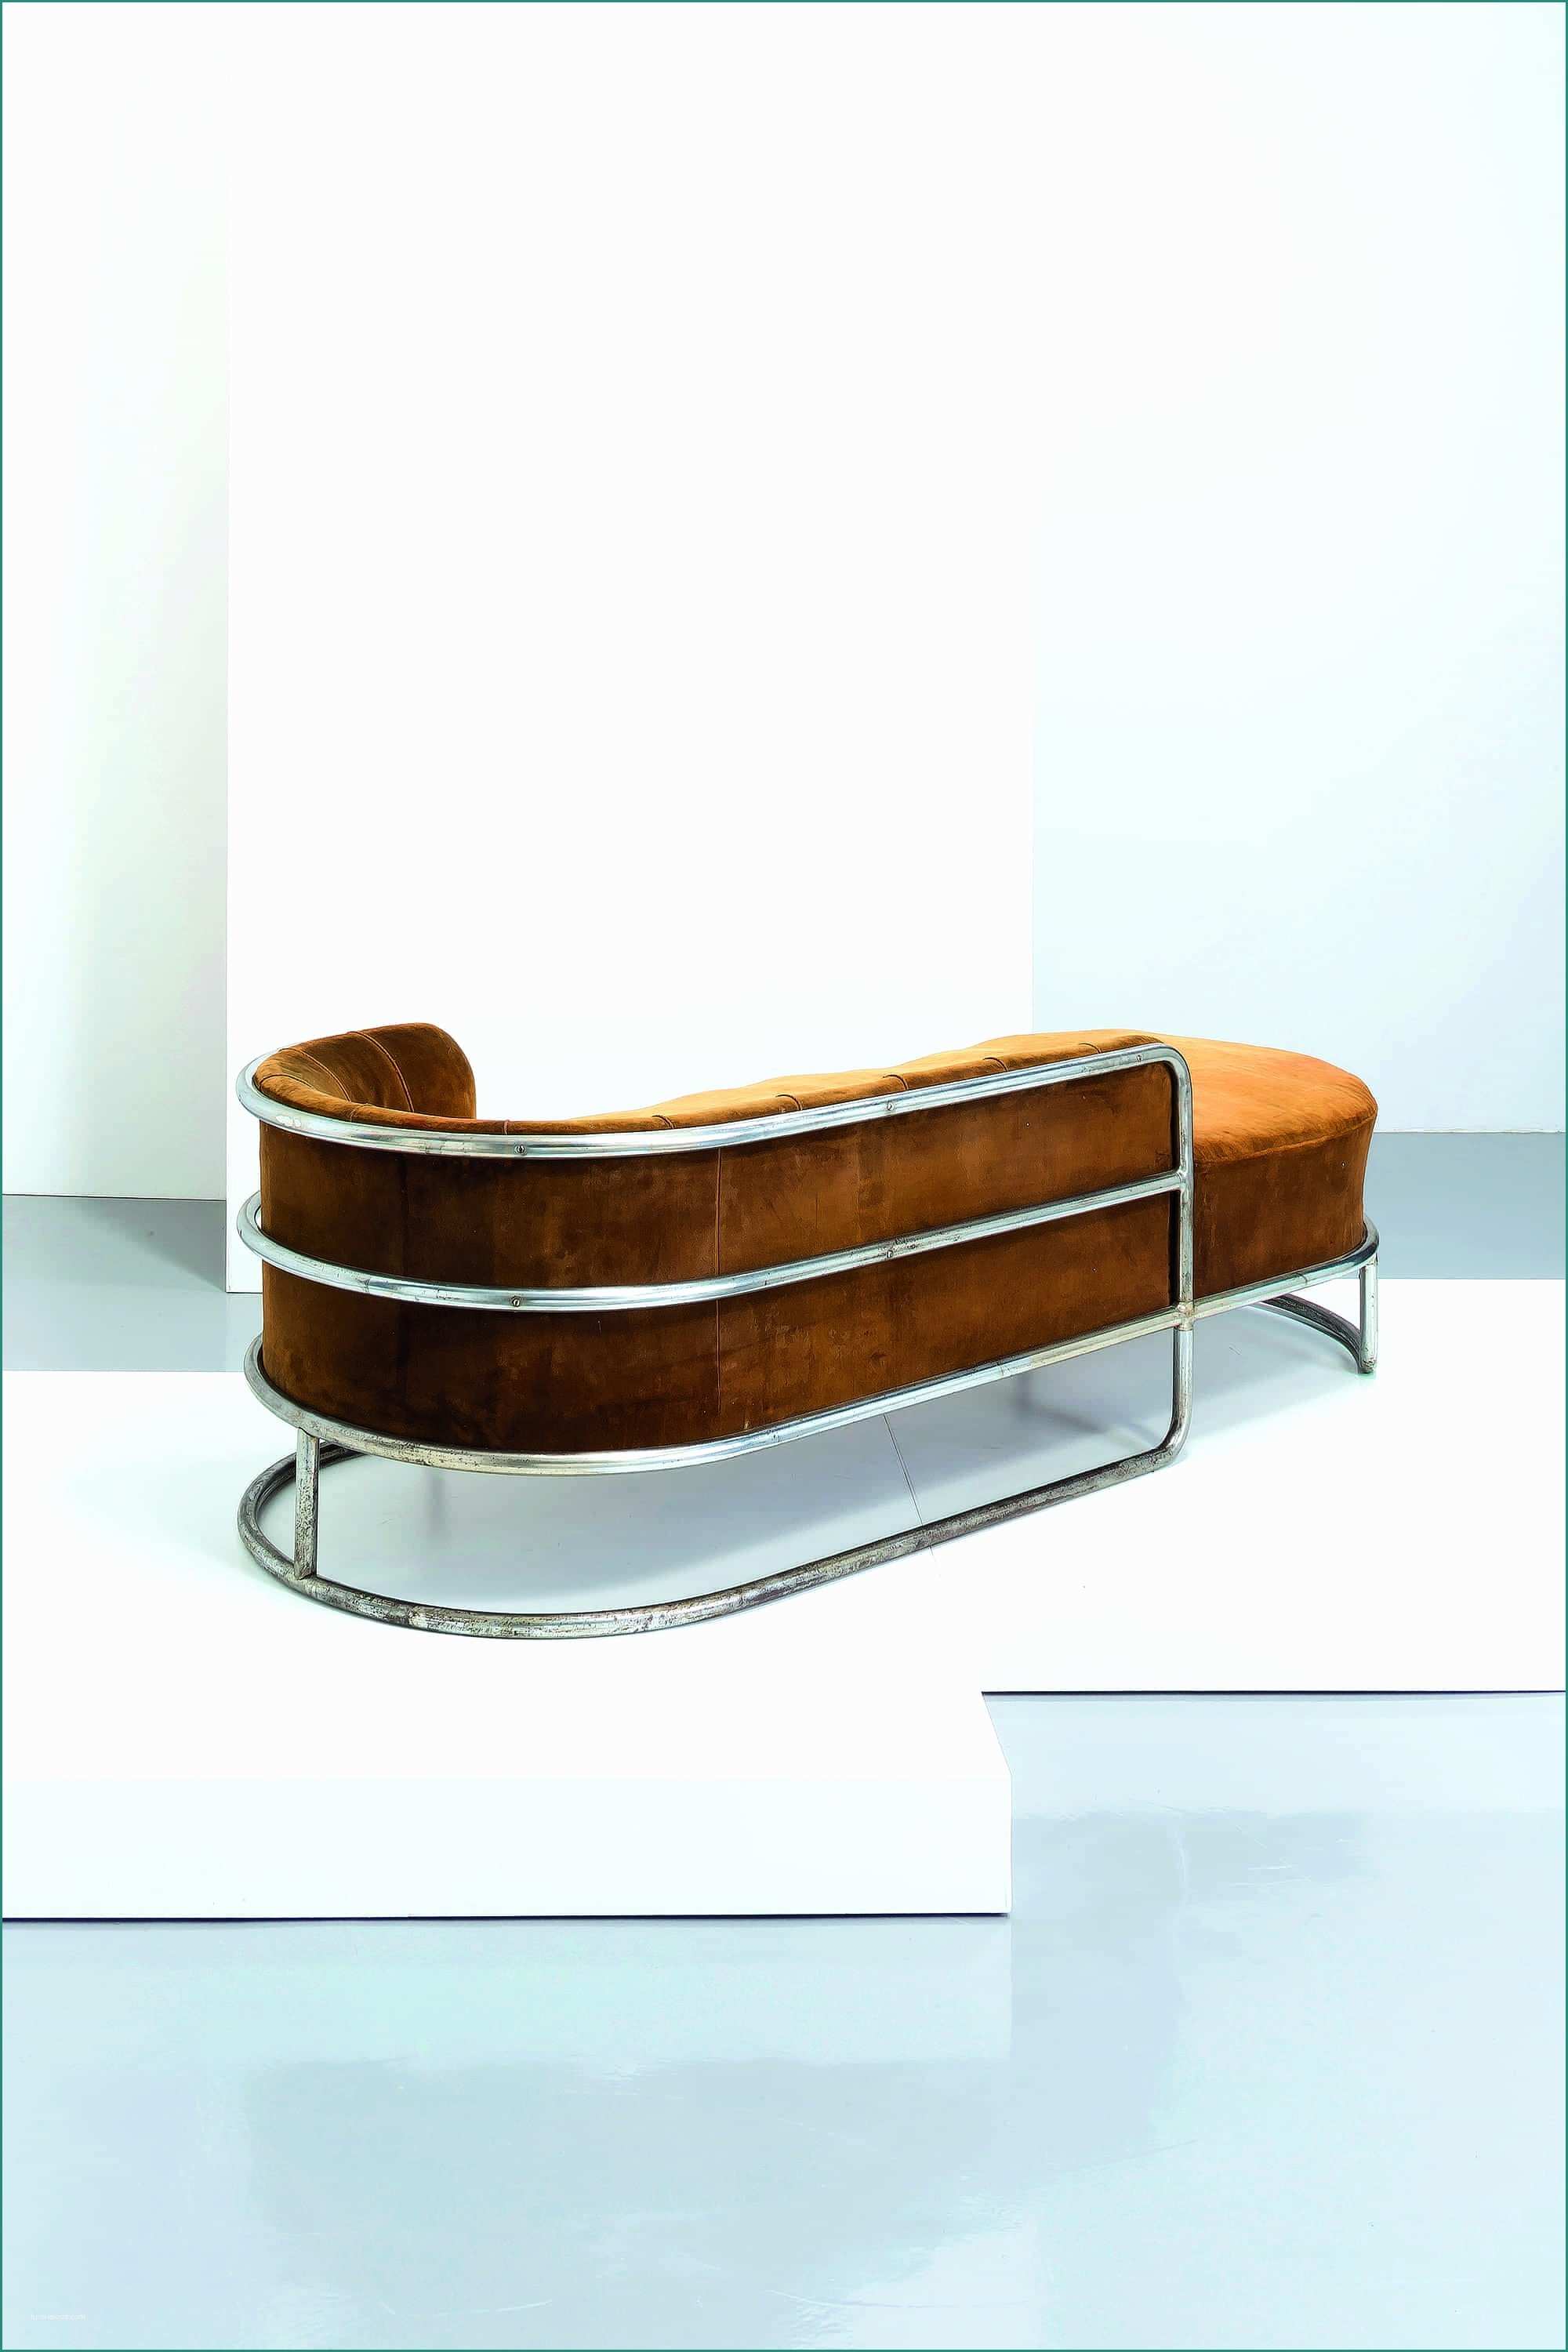 Poltrona Le Corbusier E Chaise Bauhaus Best Luxury Furntiure Chaise Longue De Vivo 1935